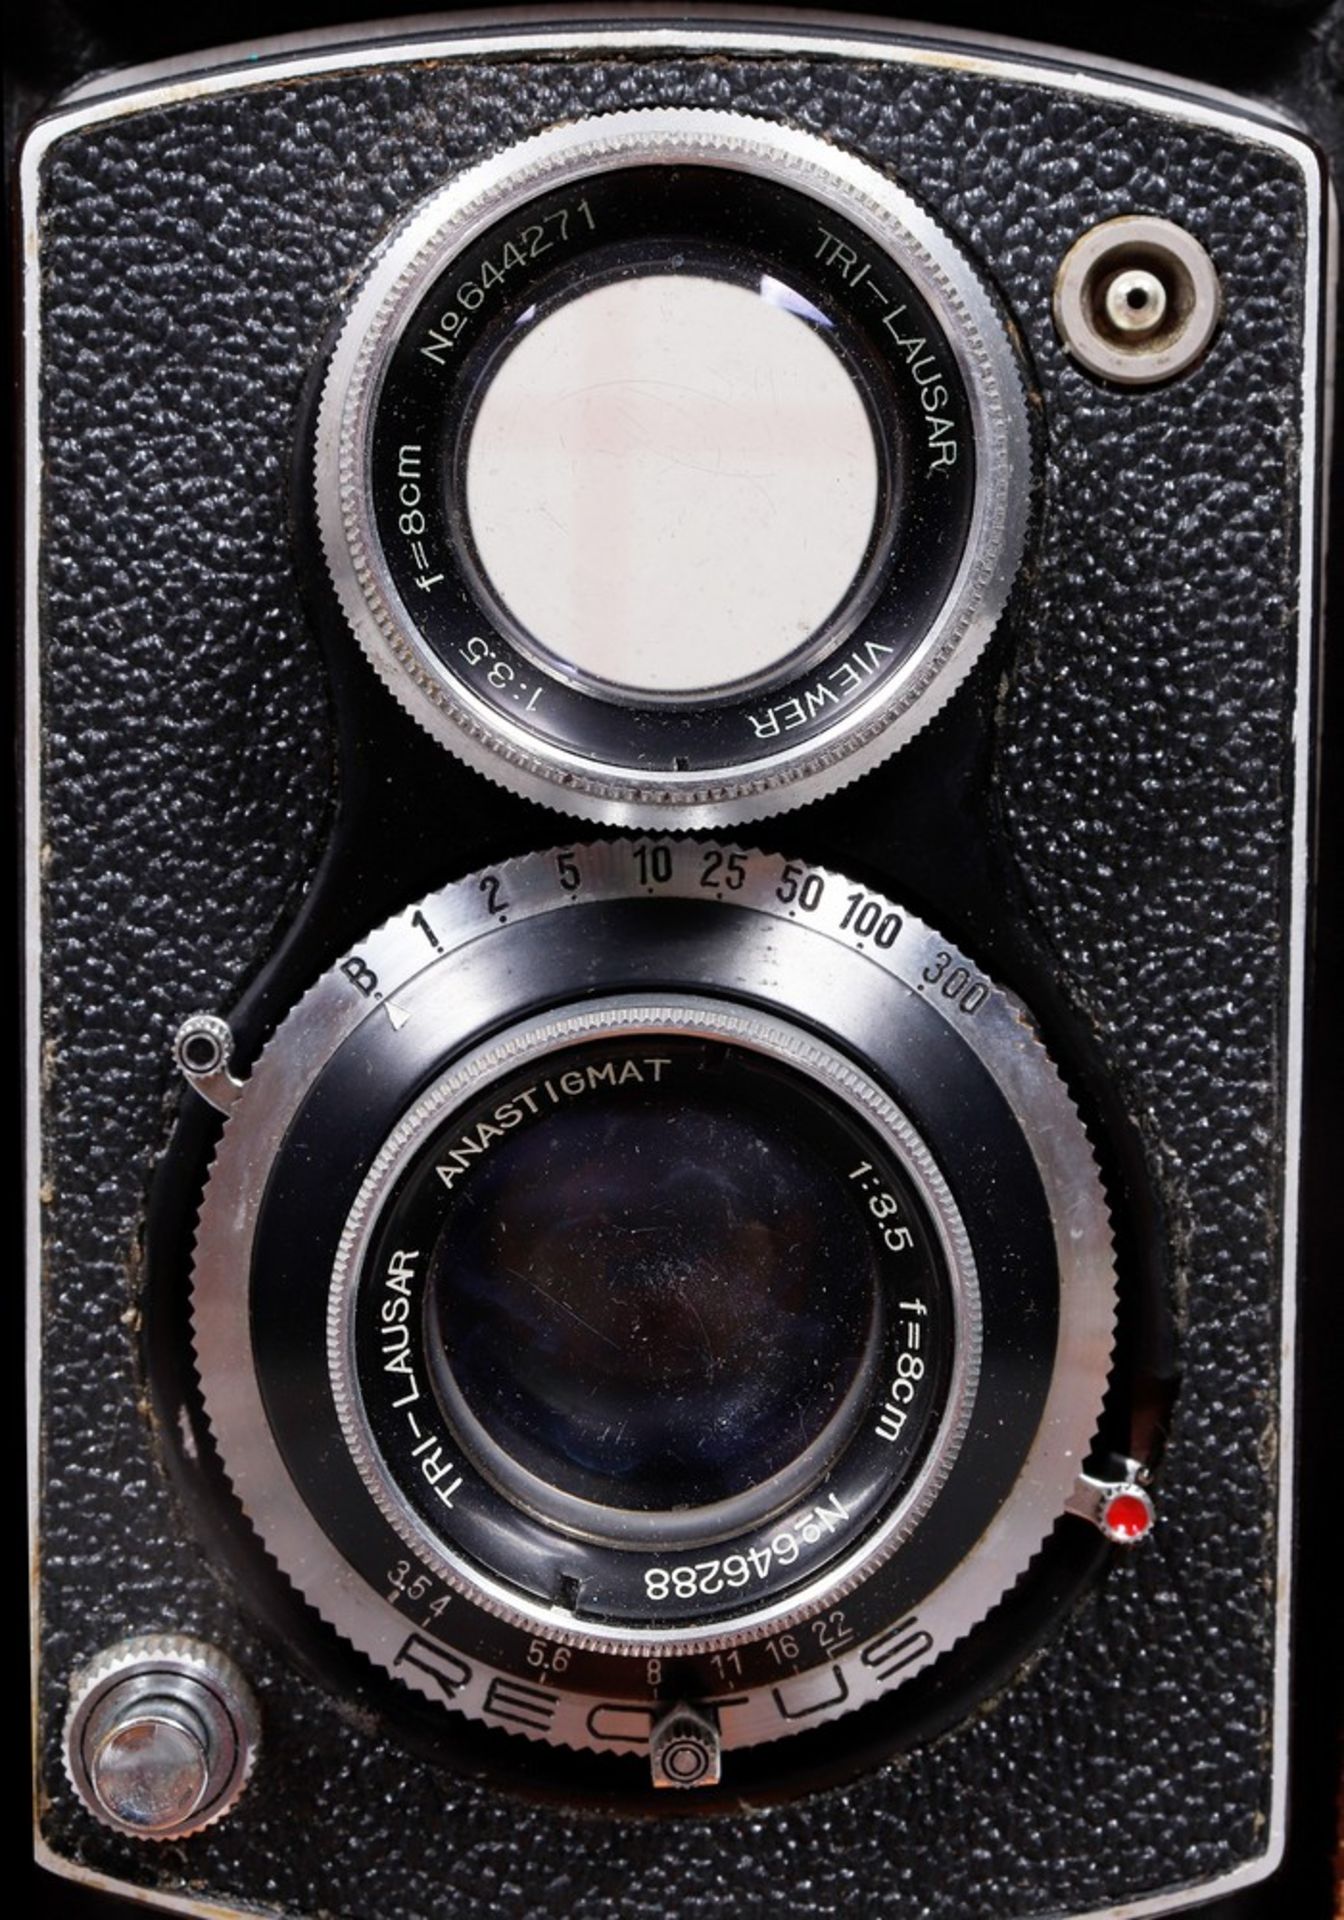 TLR-Kamera, Ripe Optical Co., Japan, 1950er Jahre  - Bild 3 aus 6